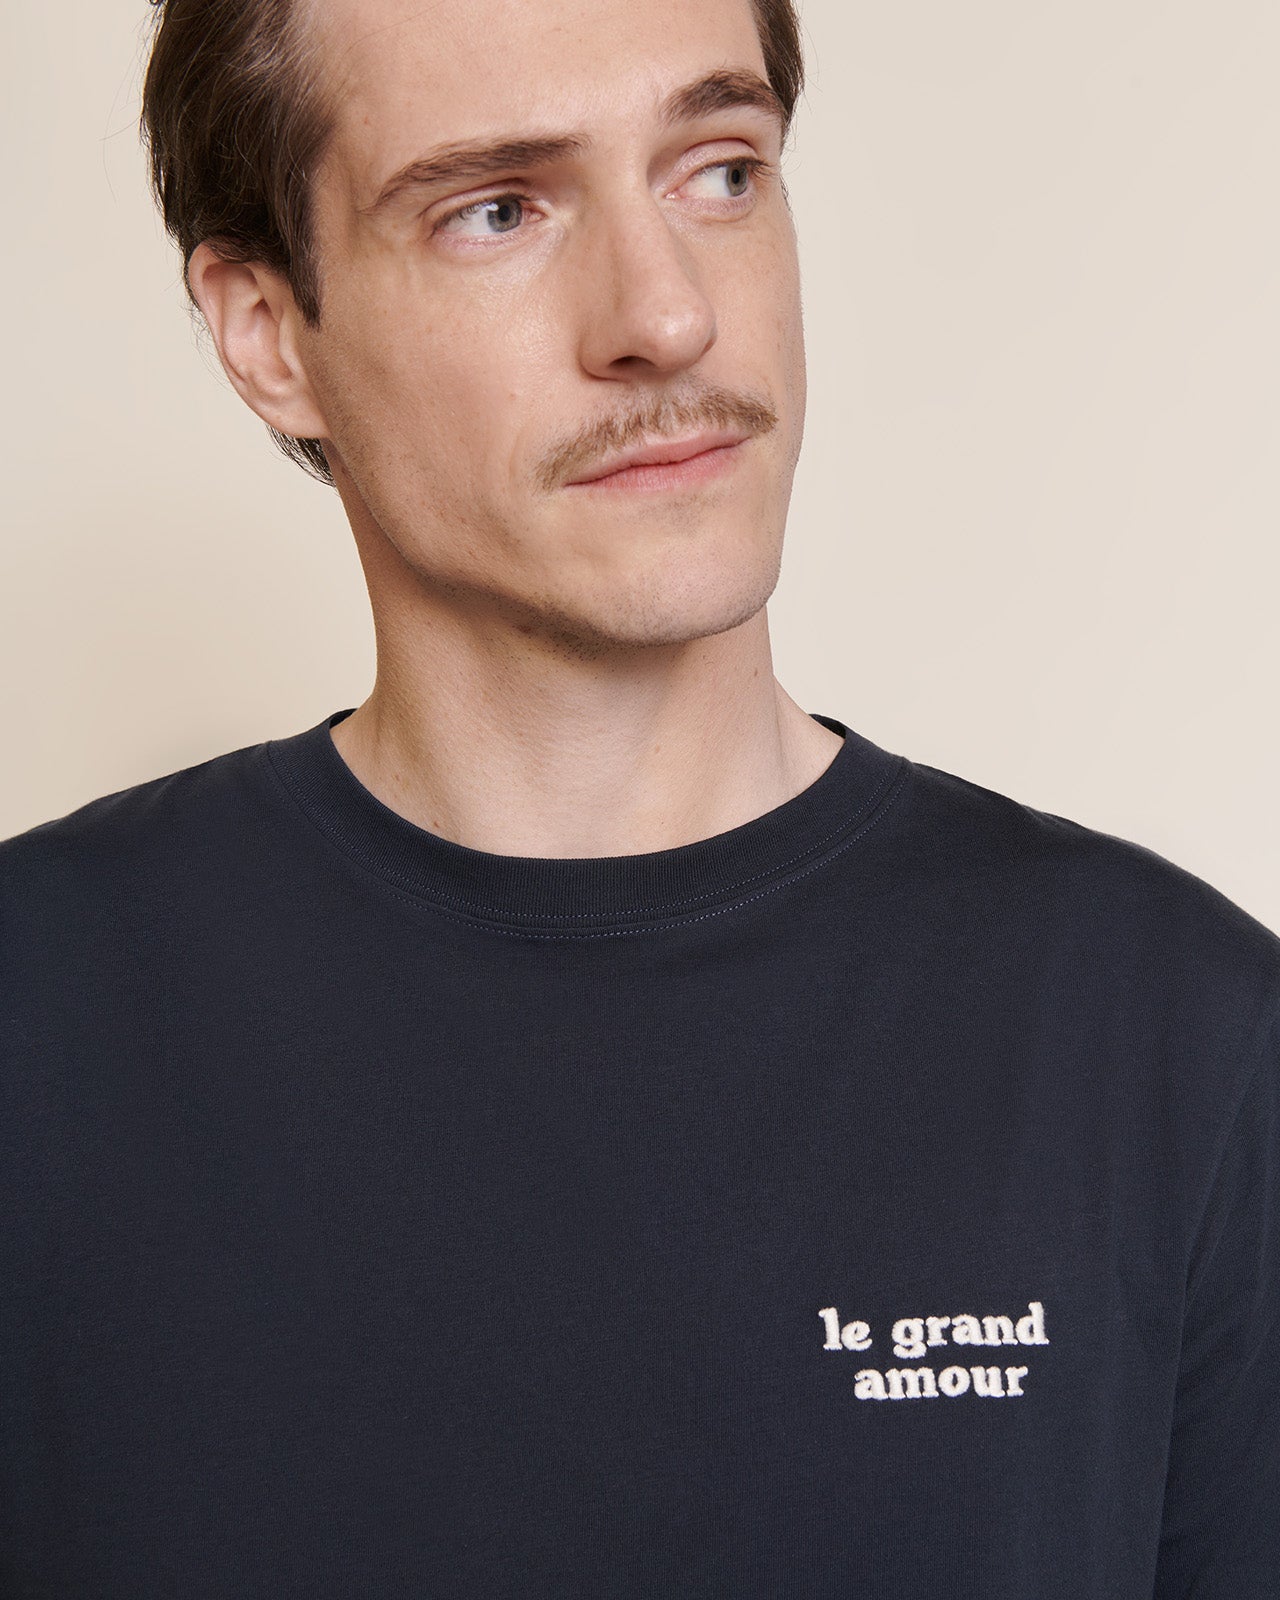 Le t-shirt Le grand amour homme en coton bio - charbon